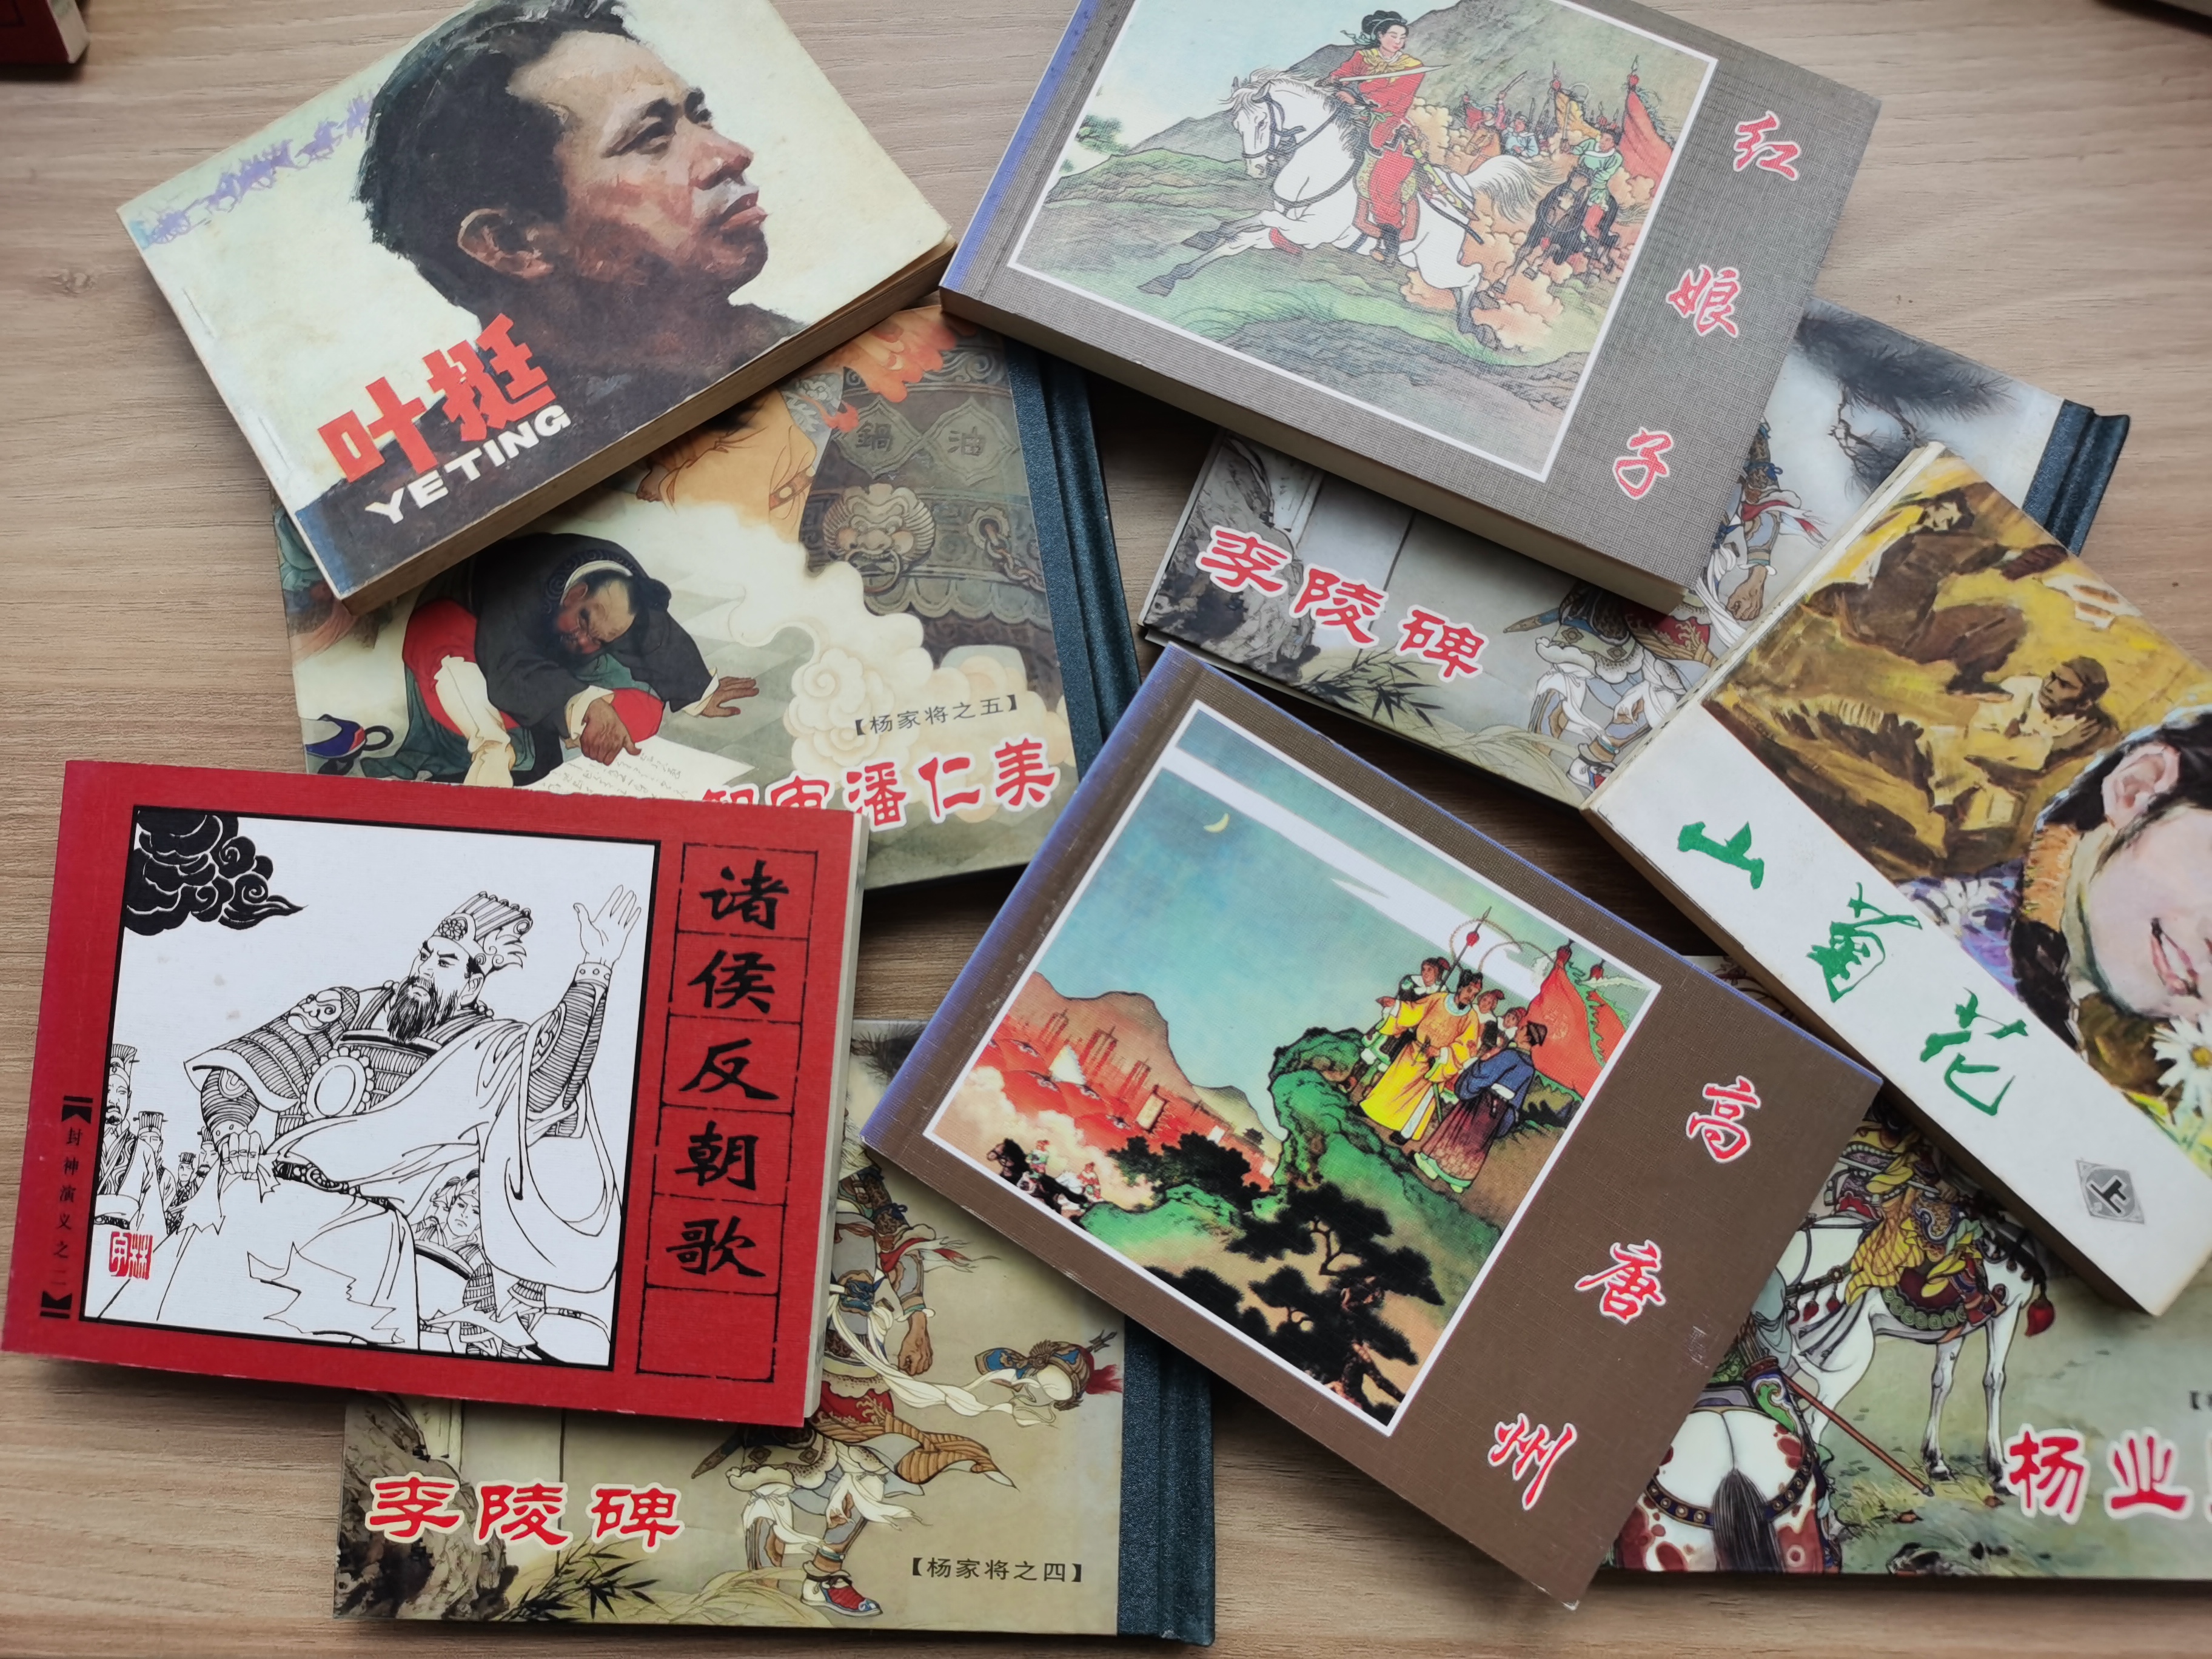 龙门县图书馆“小人书·大境界——重温经典”连环画专题展